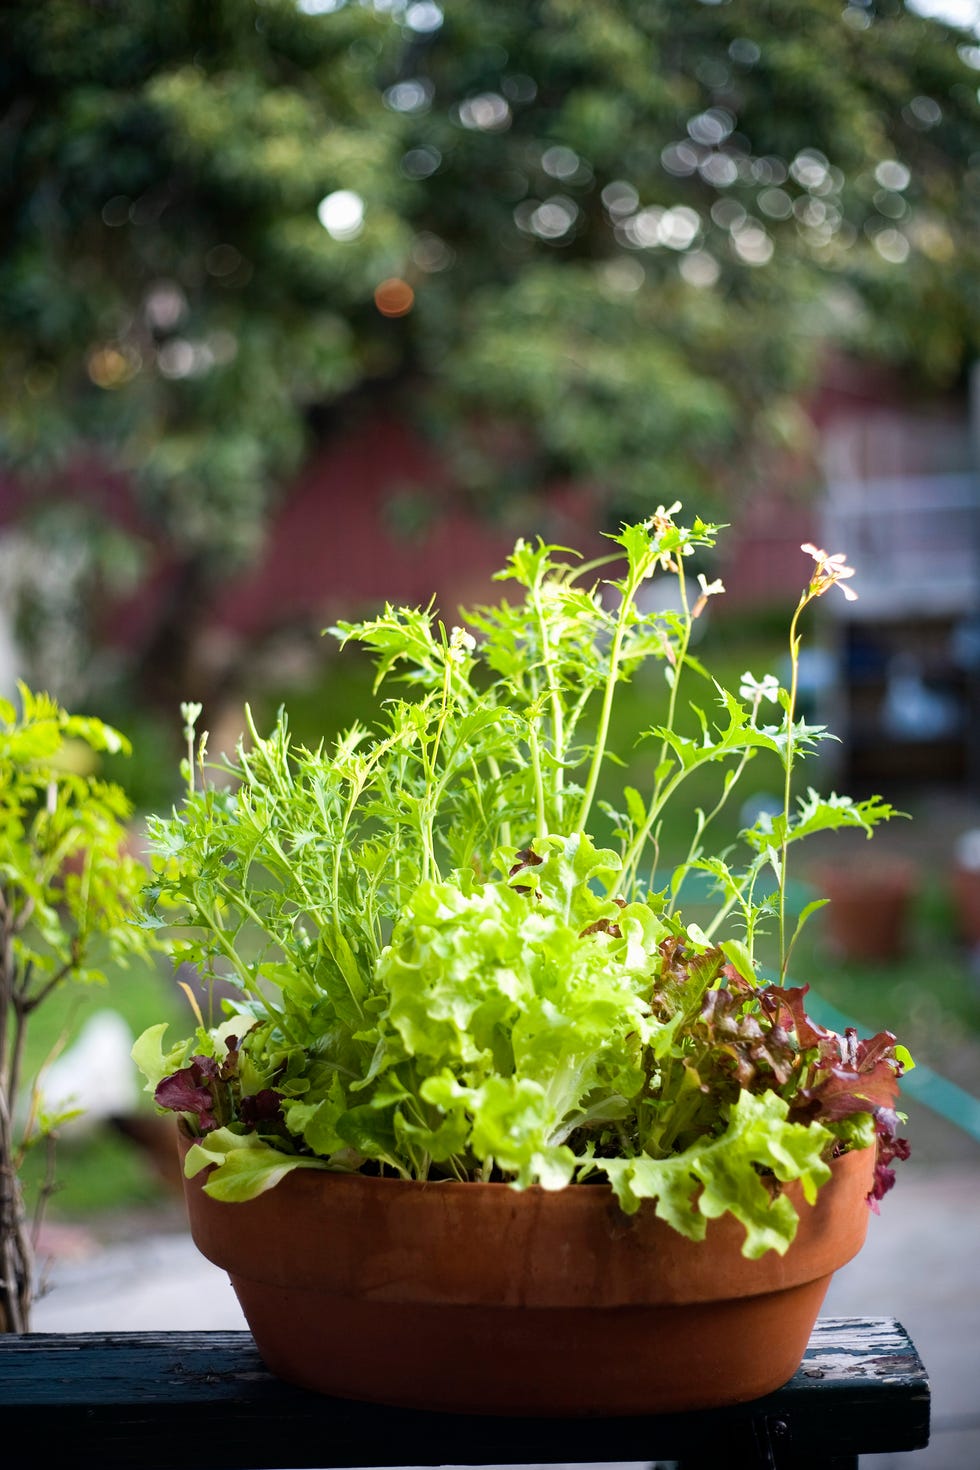 mesclun lettuce growing in pot